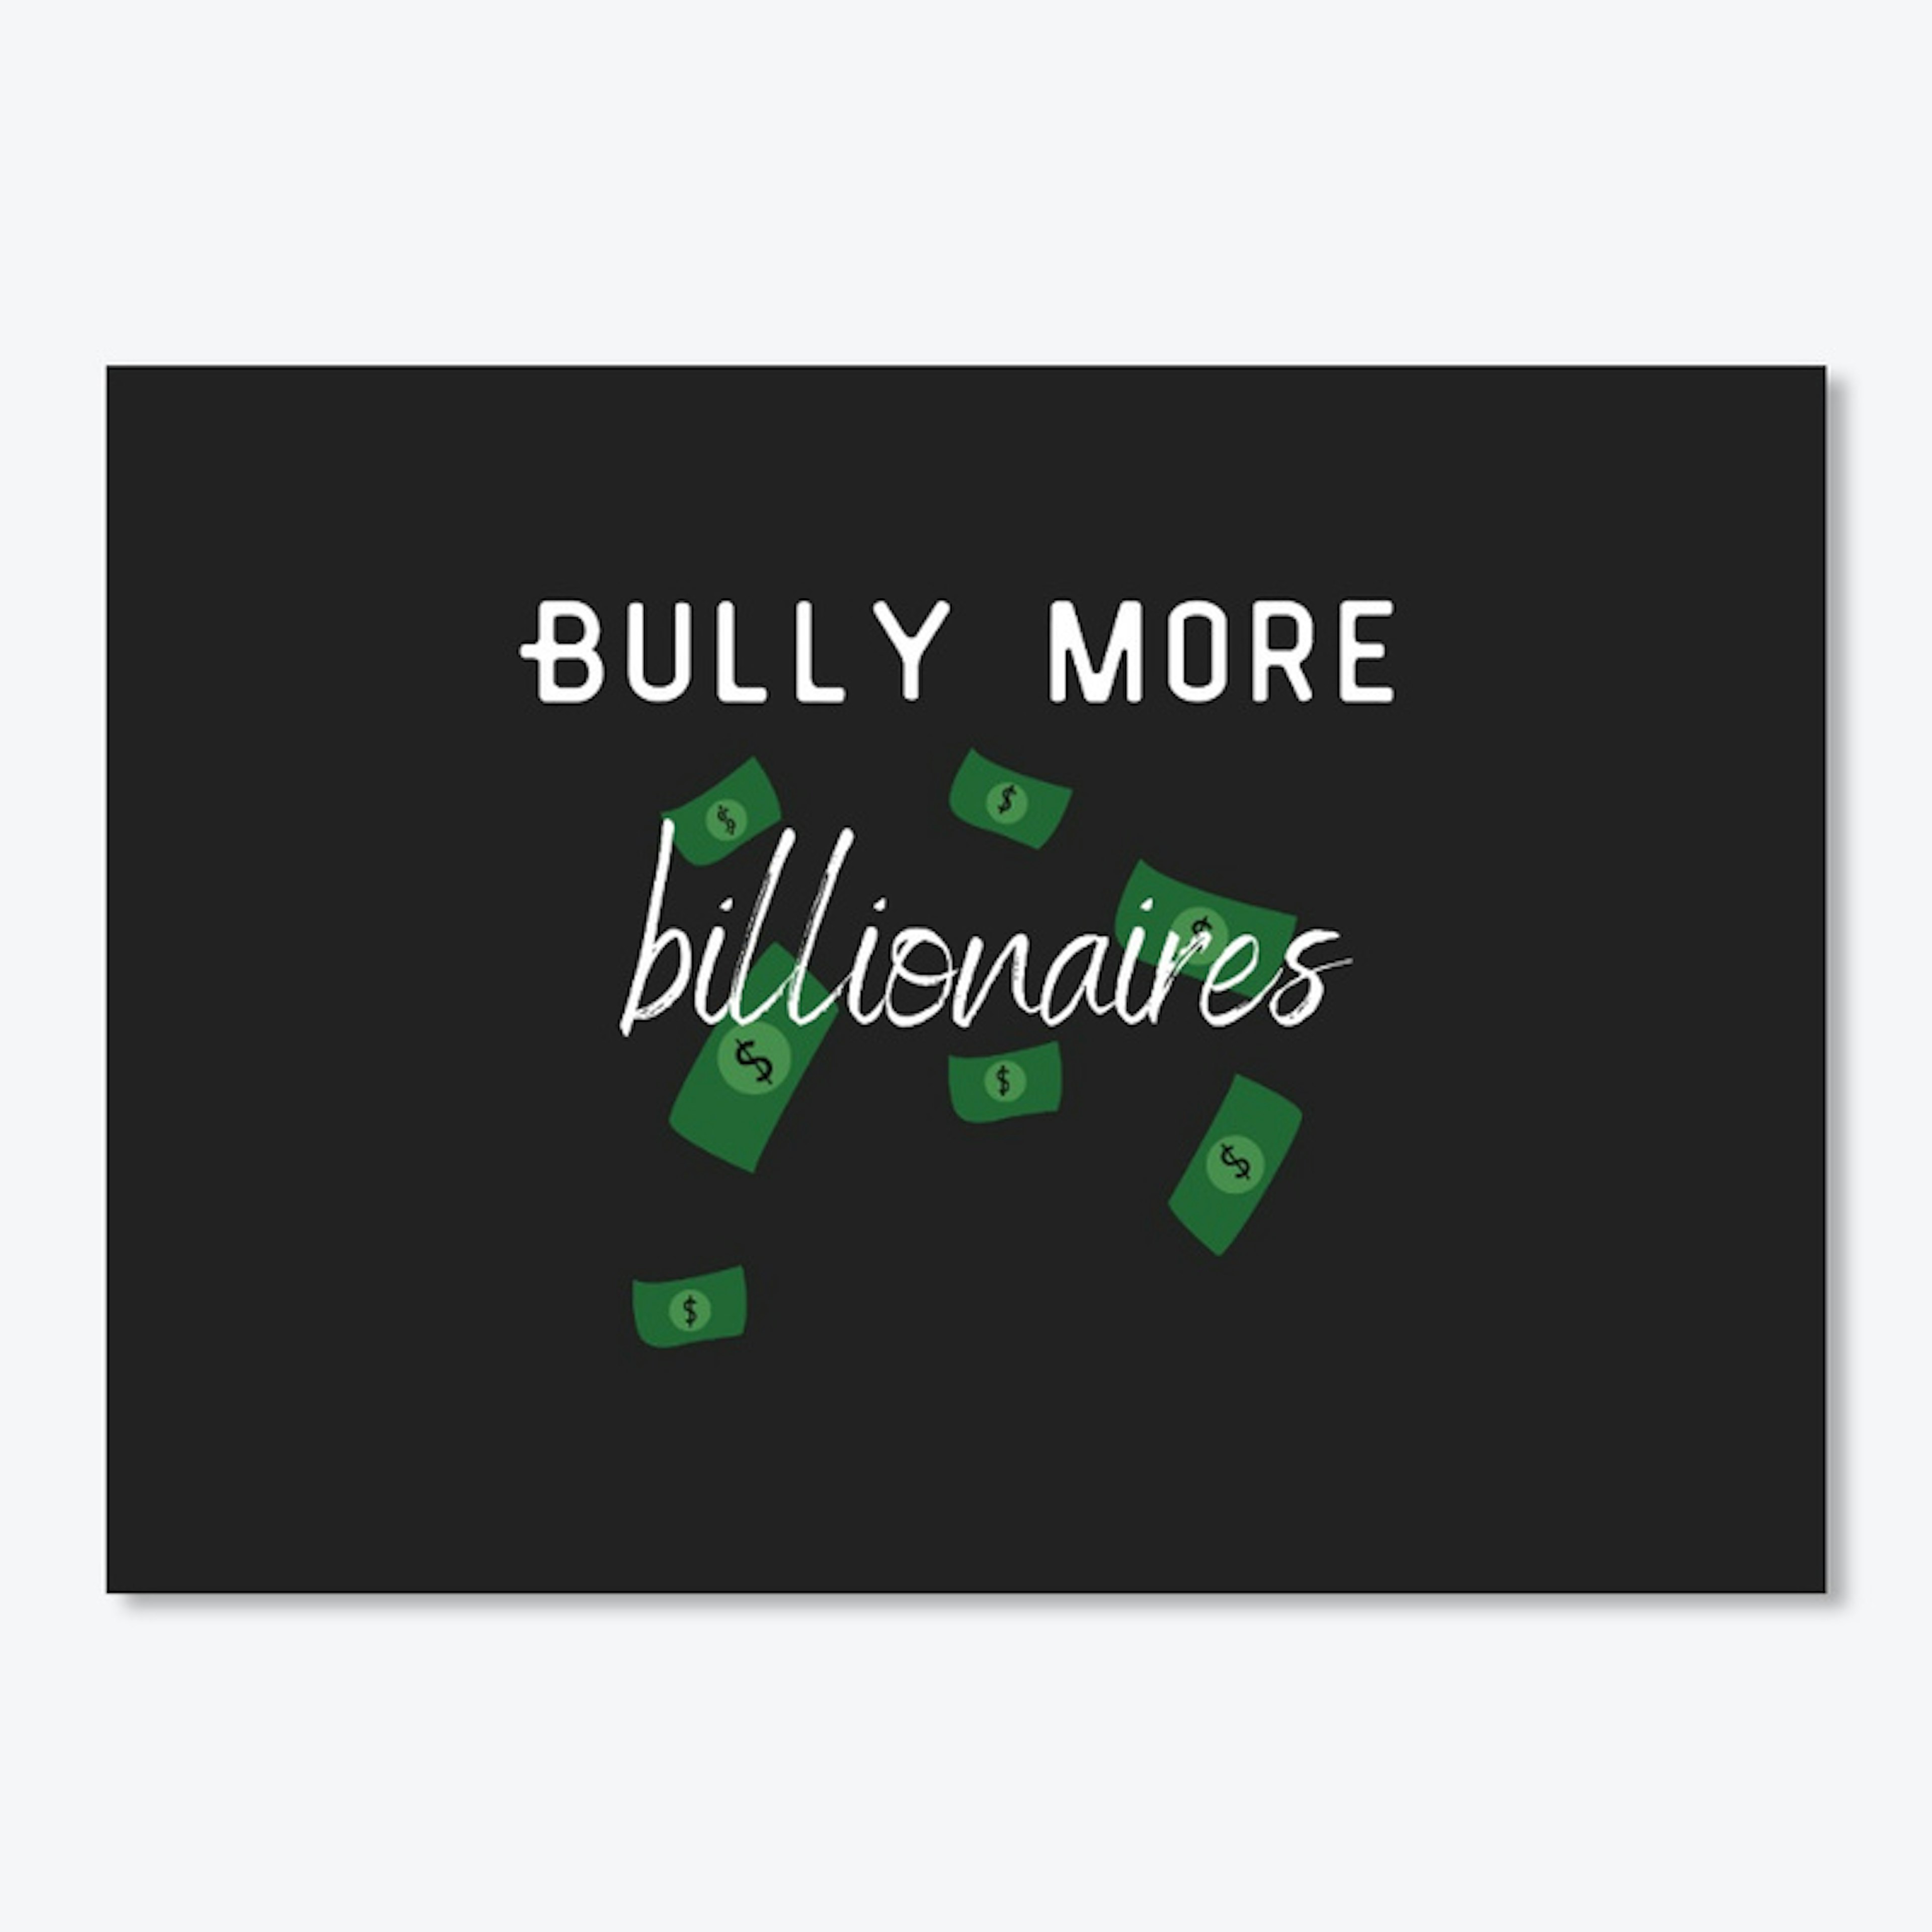 Bully More Billionaires